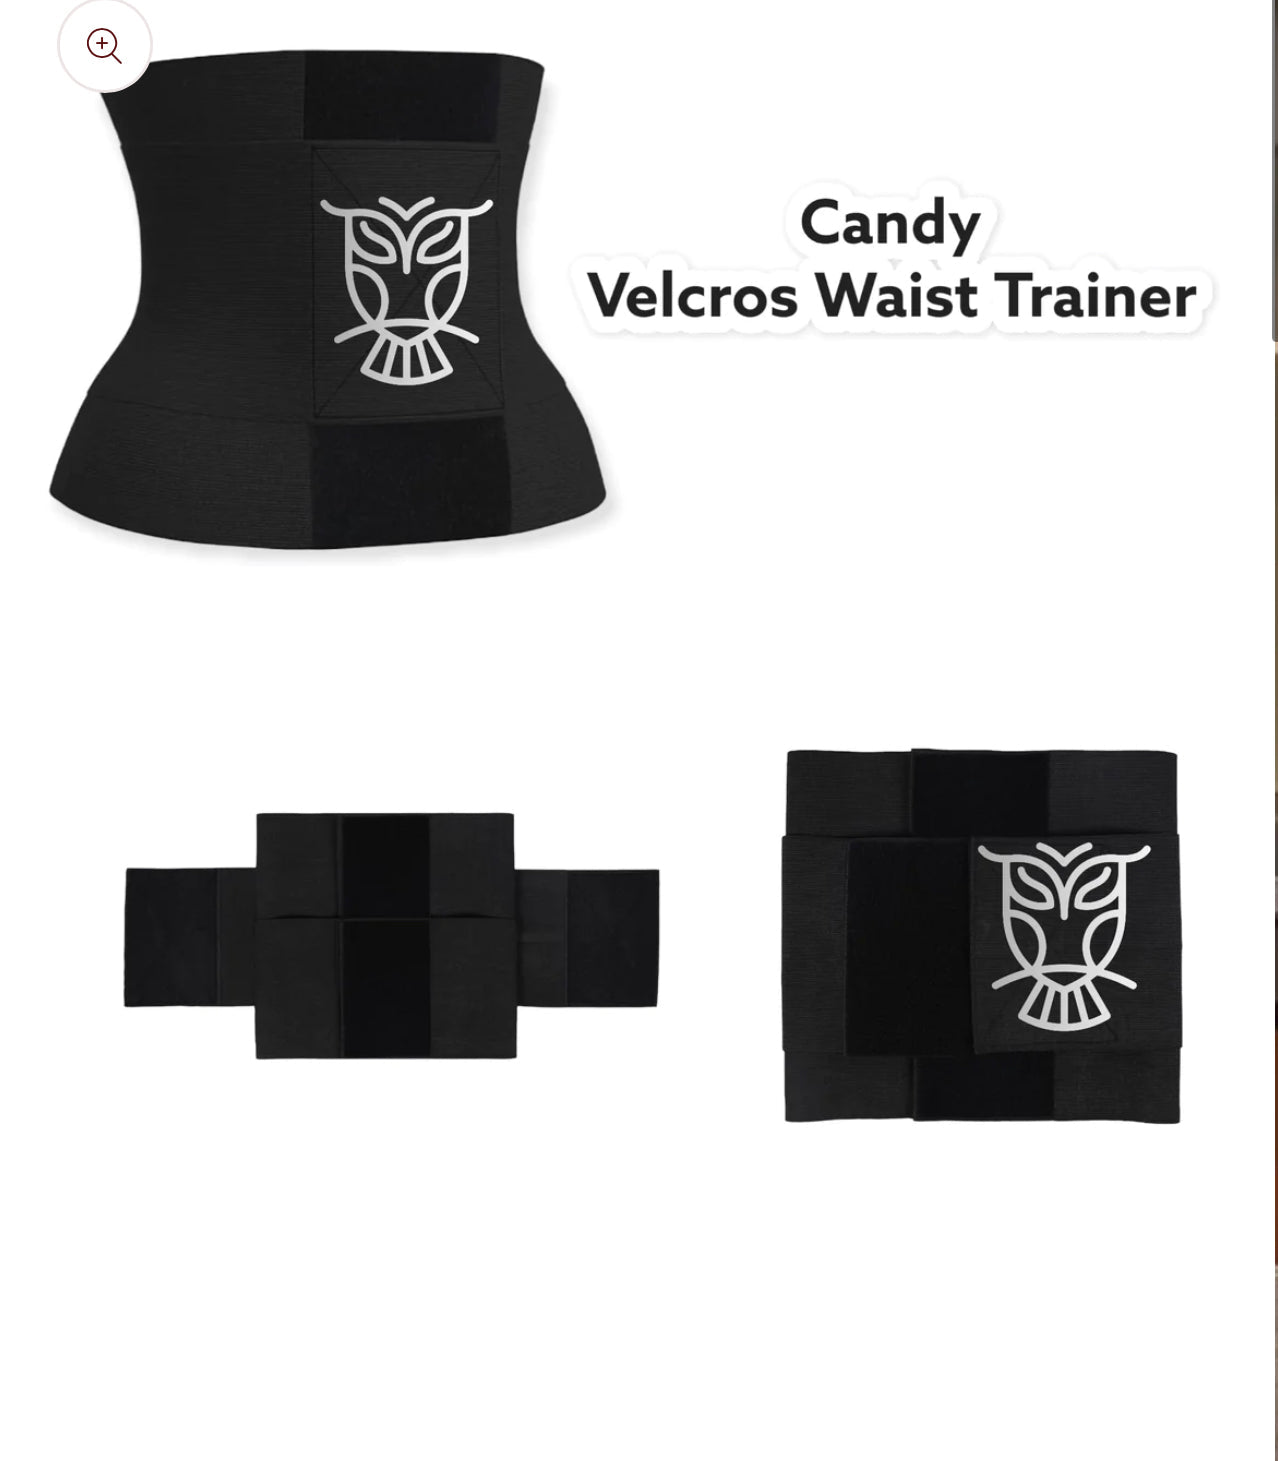 Candy Waist Trainer